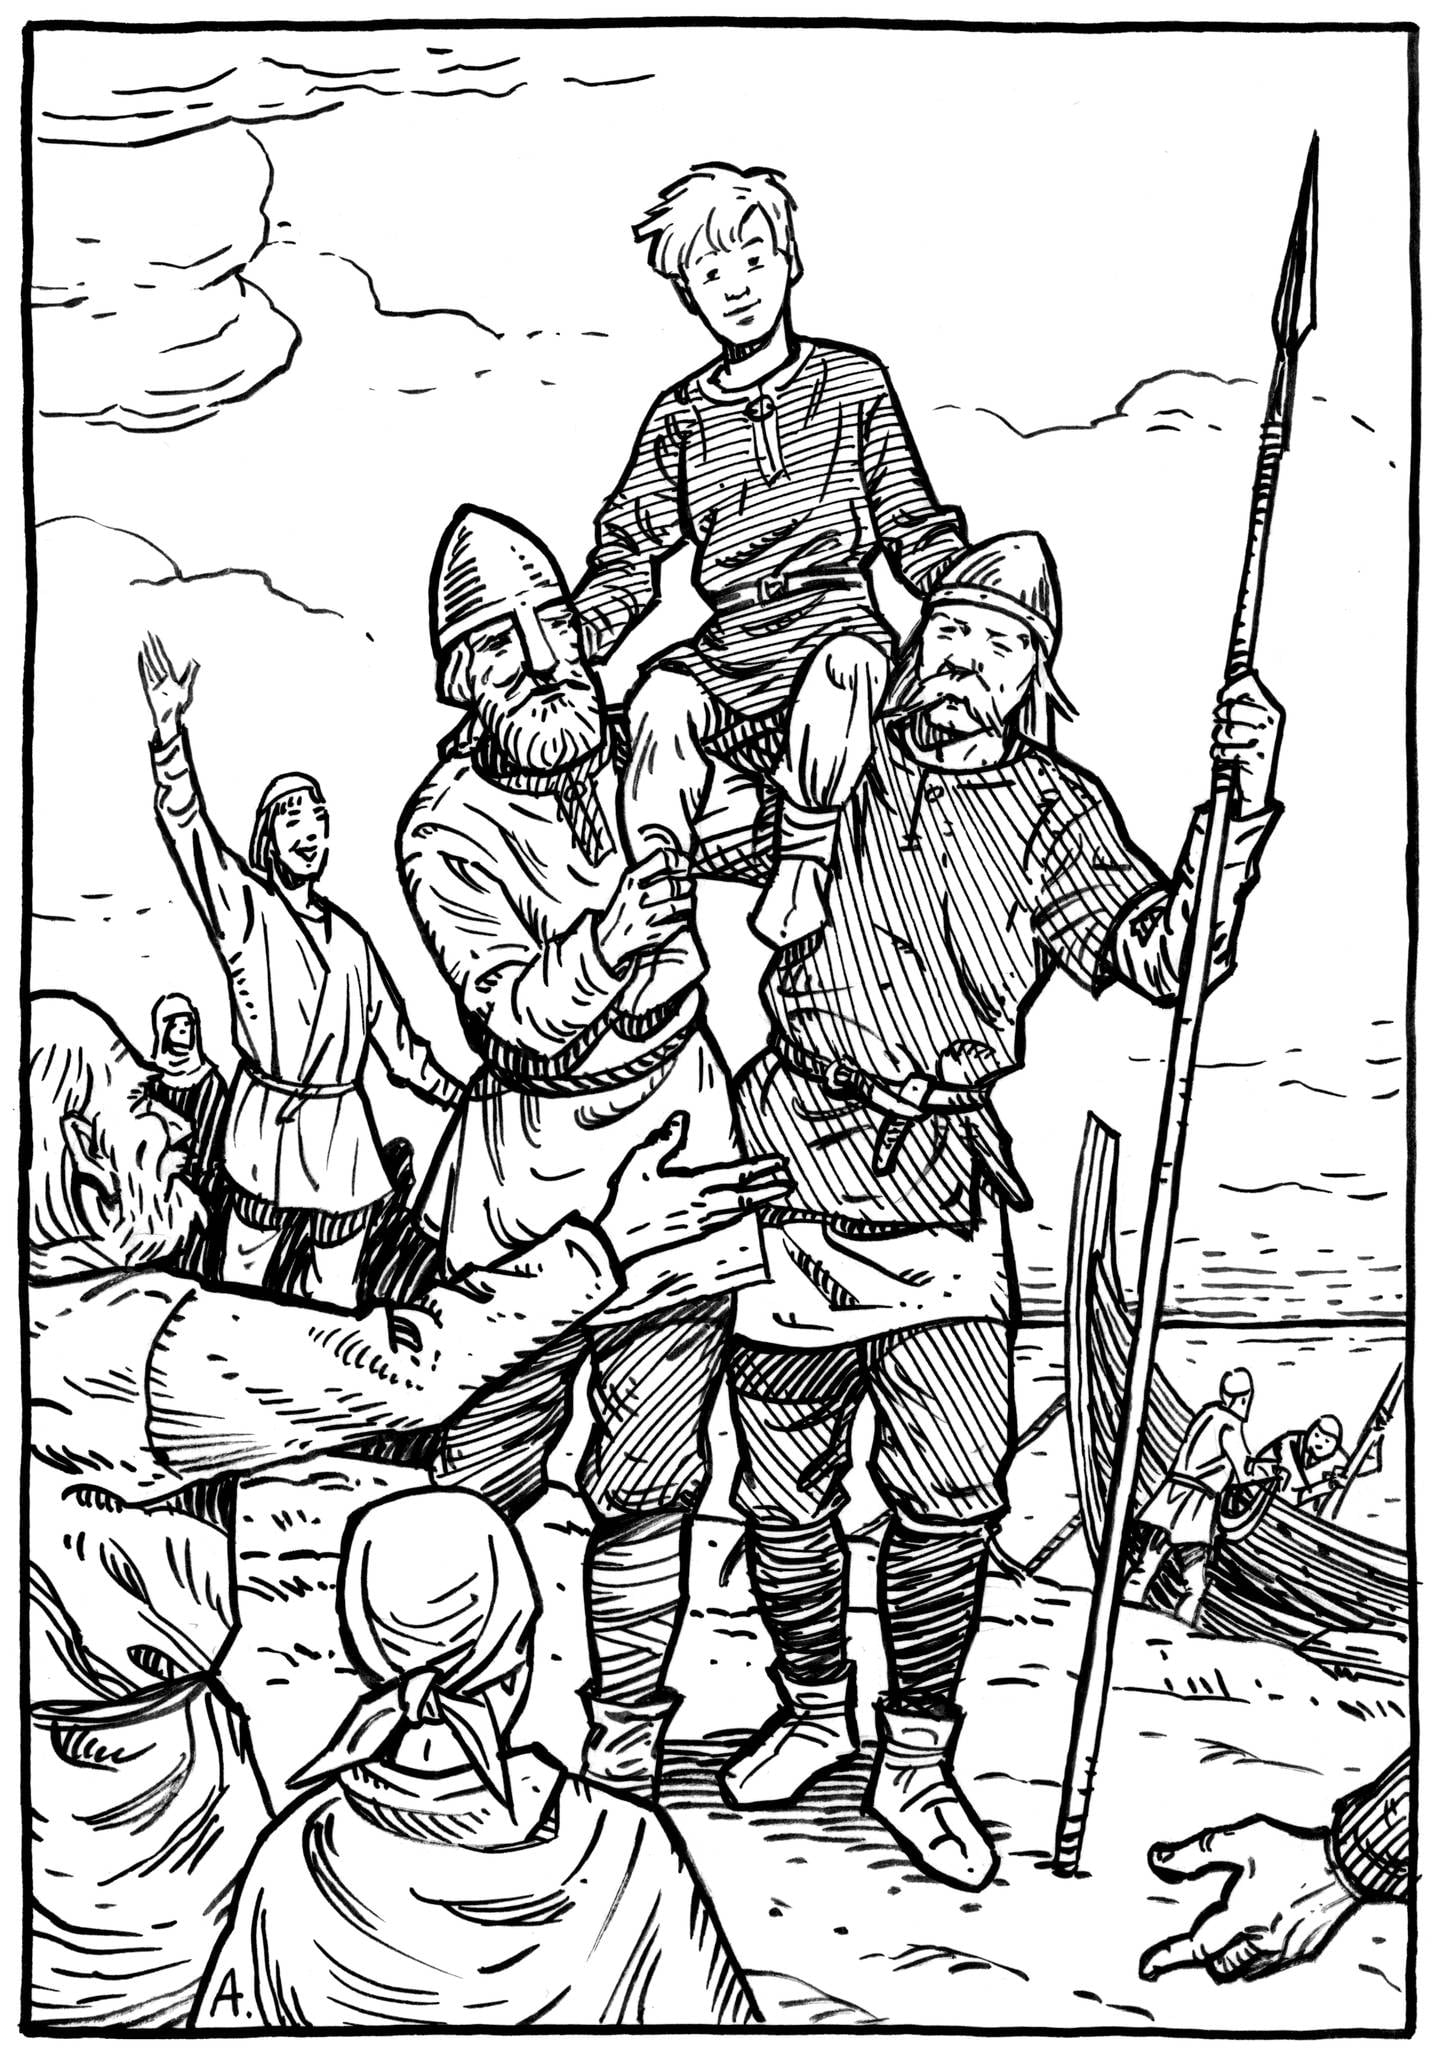 Saga Boks utgave av Ågrip - En norsk kongesaga er illustrert av Andres Kvåle Rue. Oversatt til bokmål av Edvard Eikill.